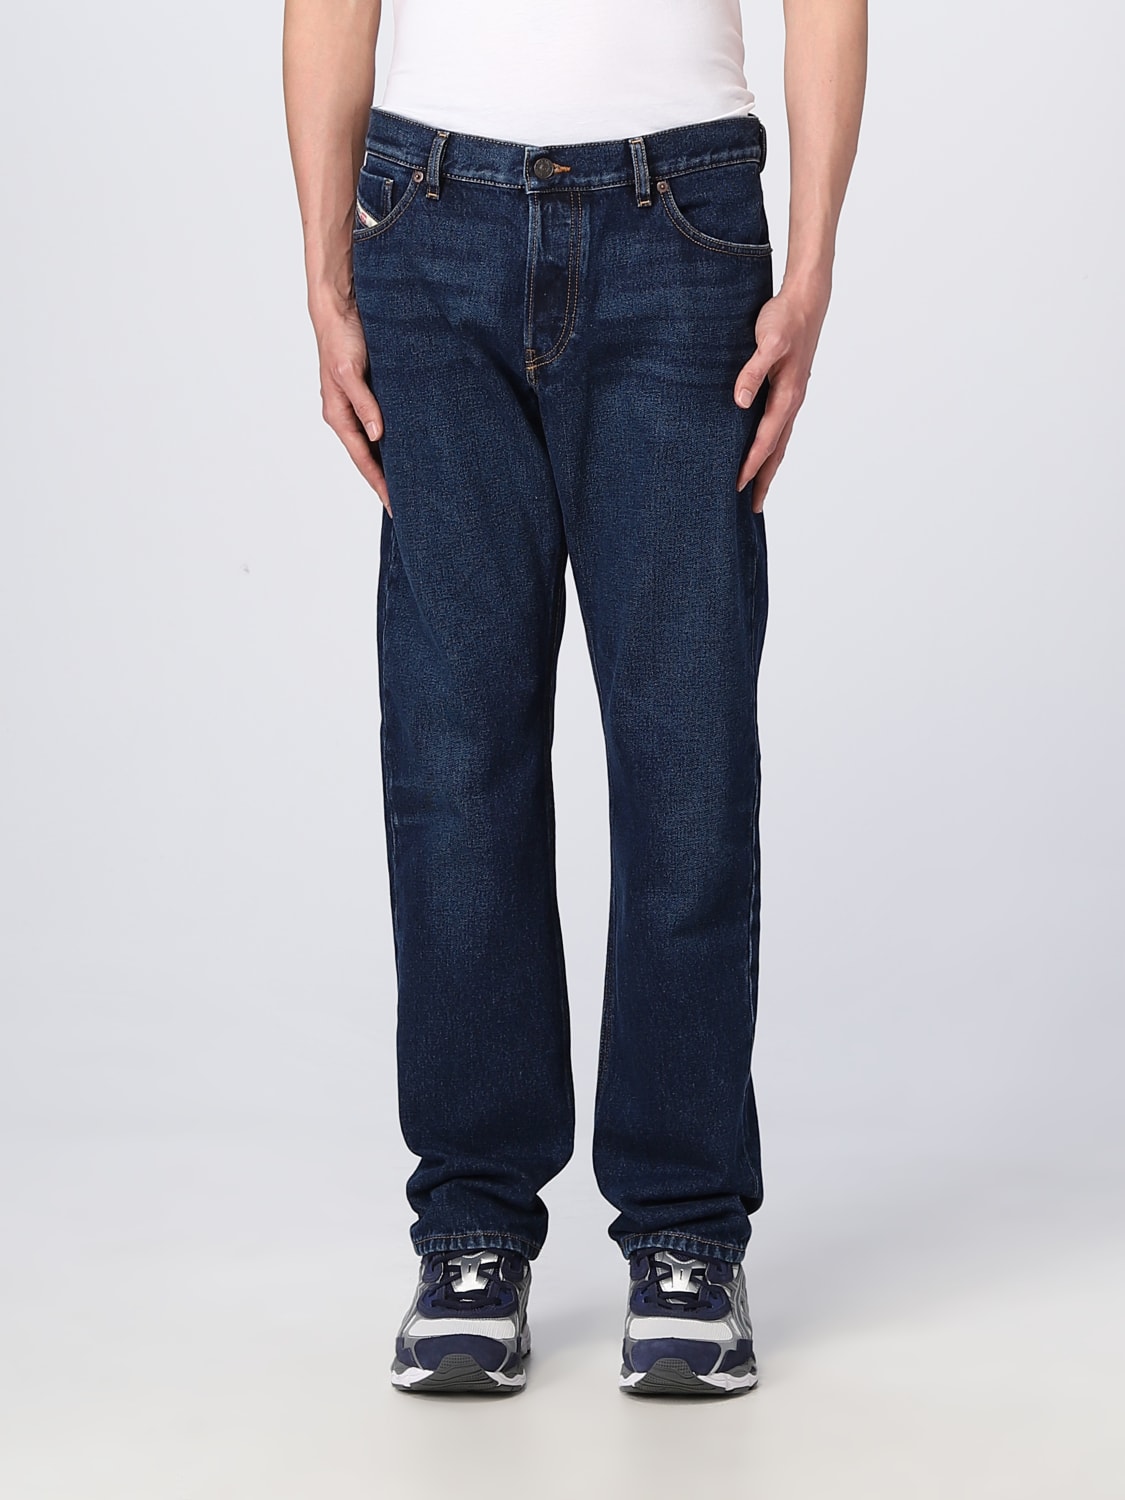 squat Rå Spekulerer Diesel Outlet: denim jeans - Denim | Diesel jeans A09160007E6 online at  GIGLIO.COM